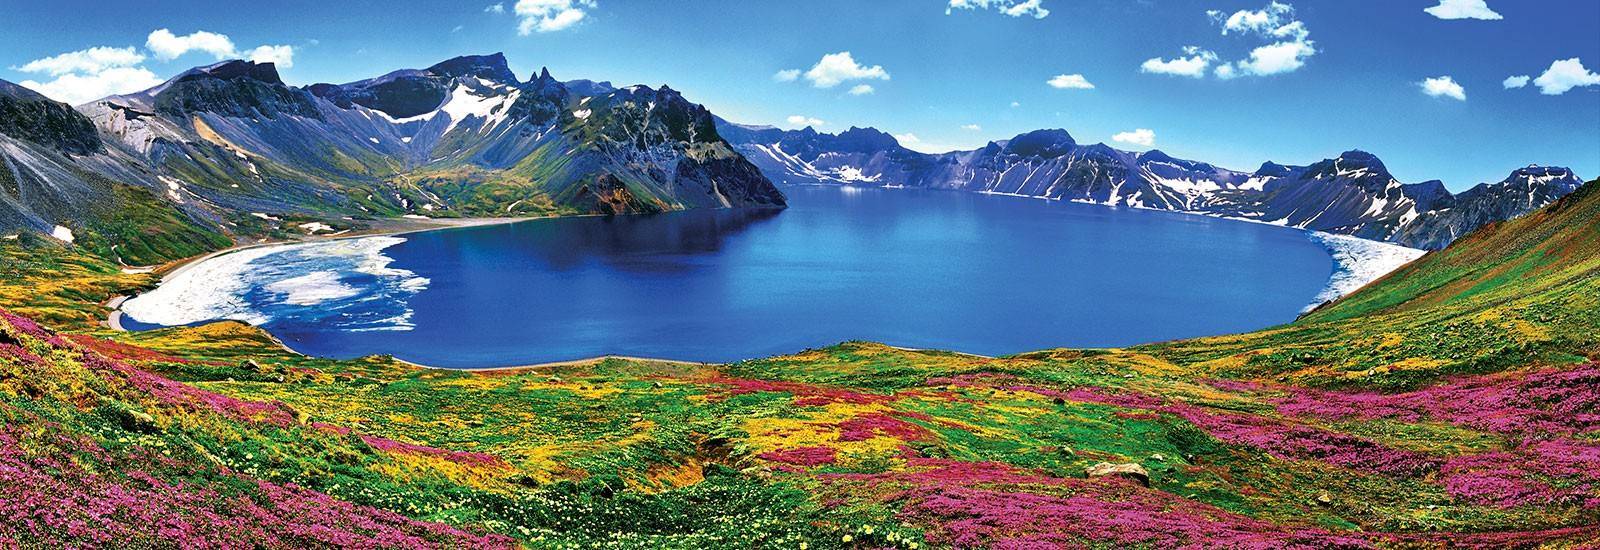 中国20个绝美湖泊,美到不敢相信自己的眼睛!